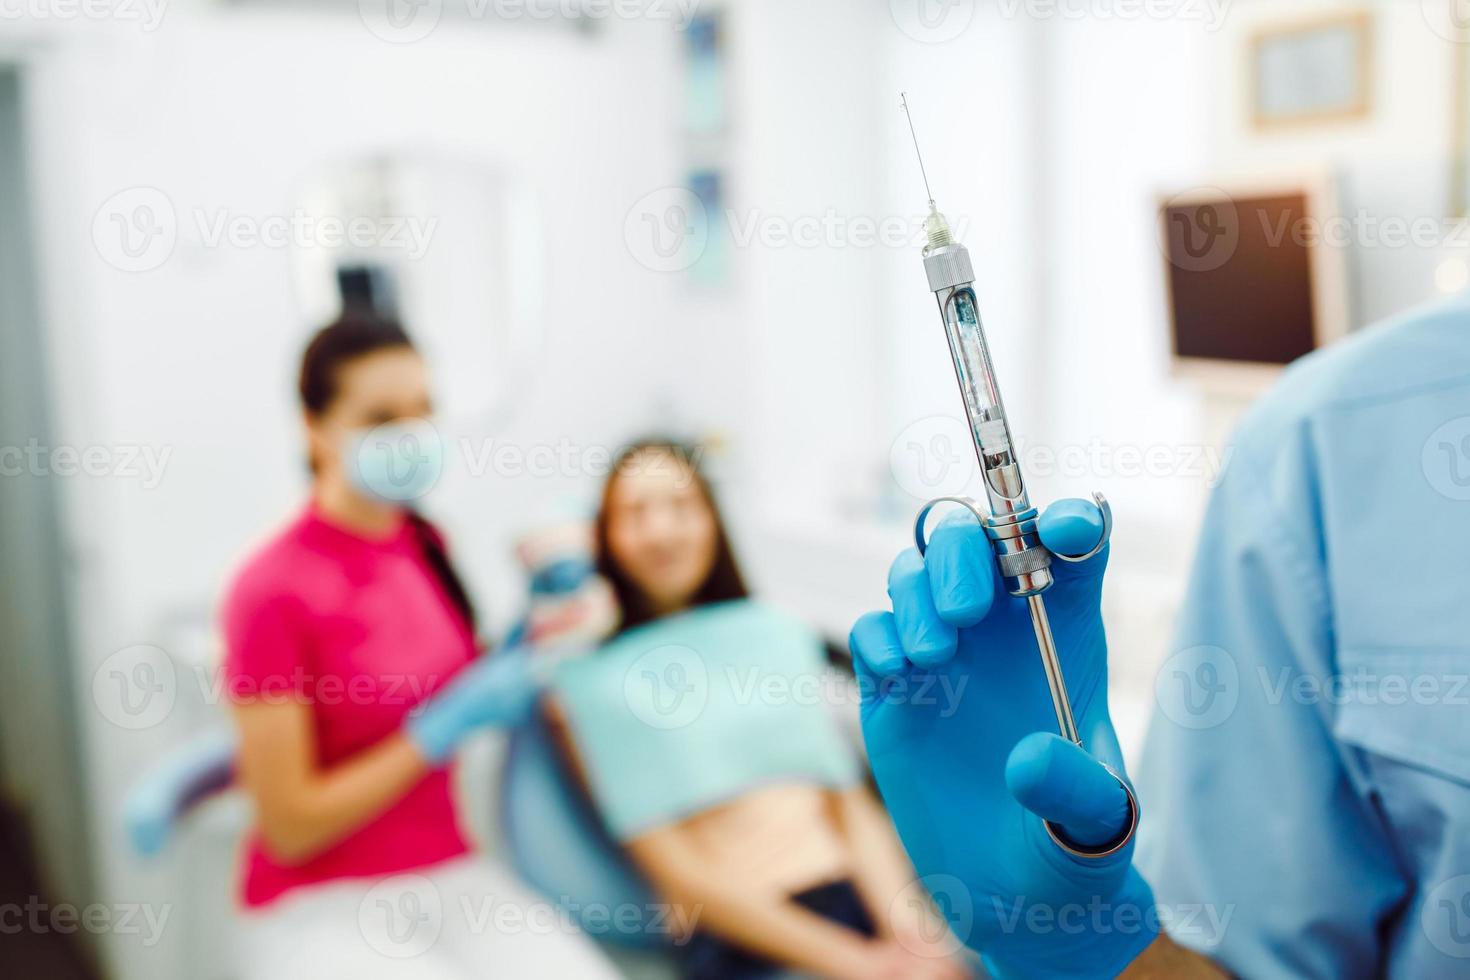 Zahnanästhesie vor dem Hintergrund des Patienten foto